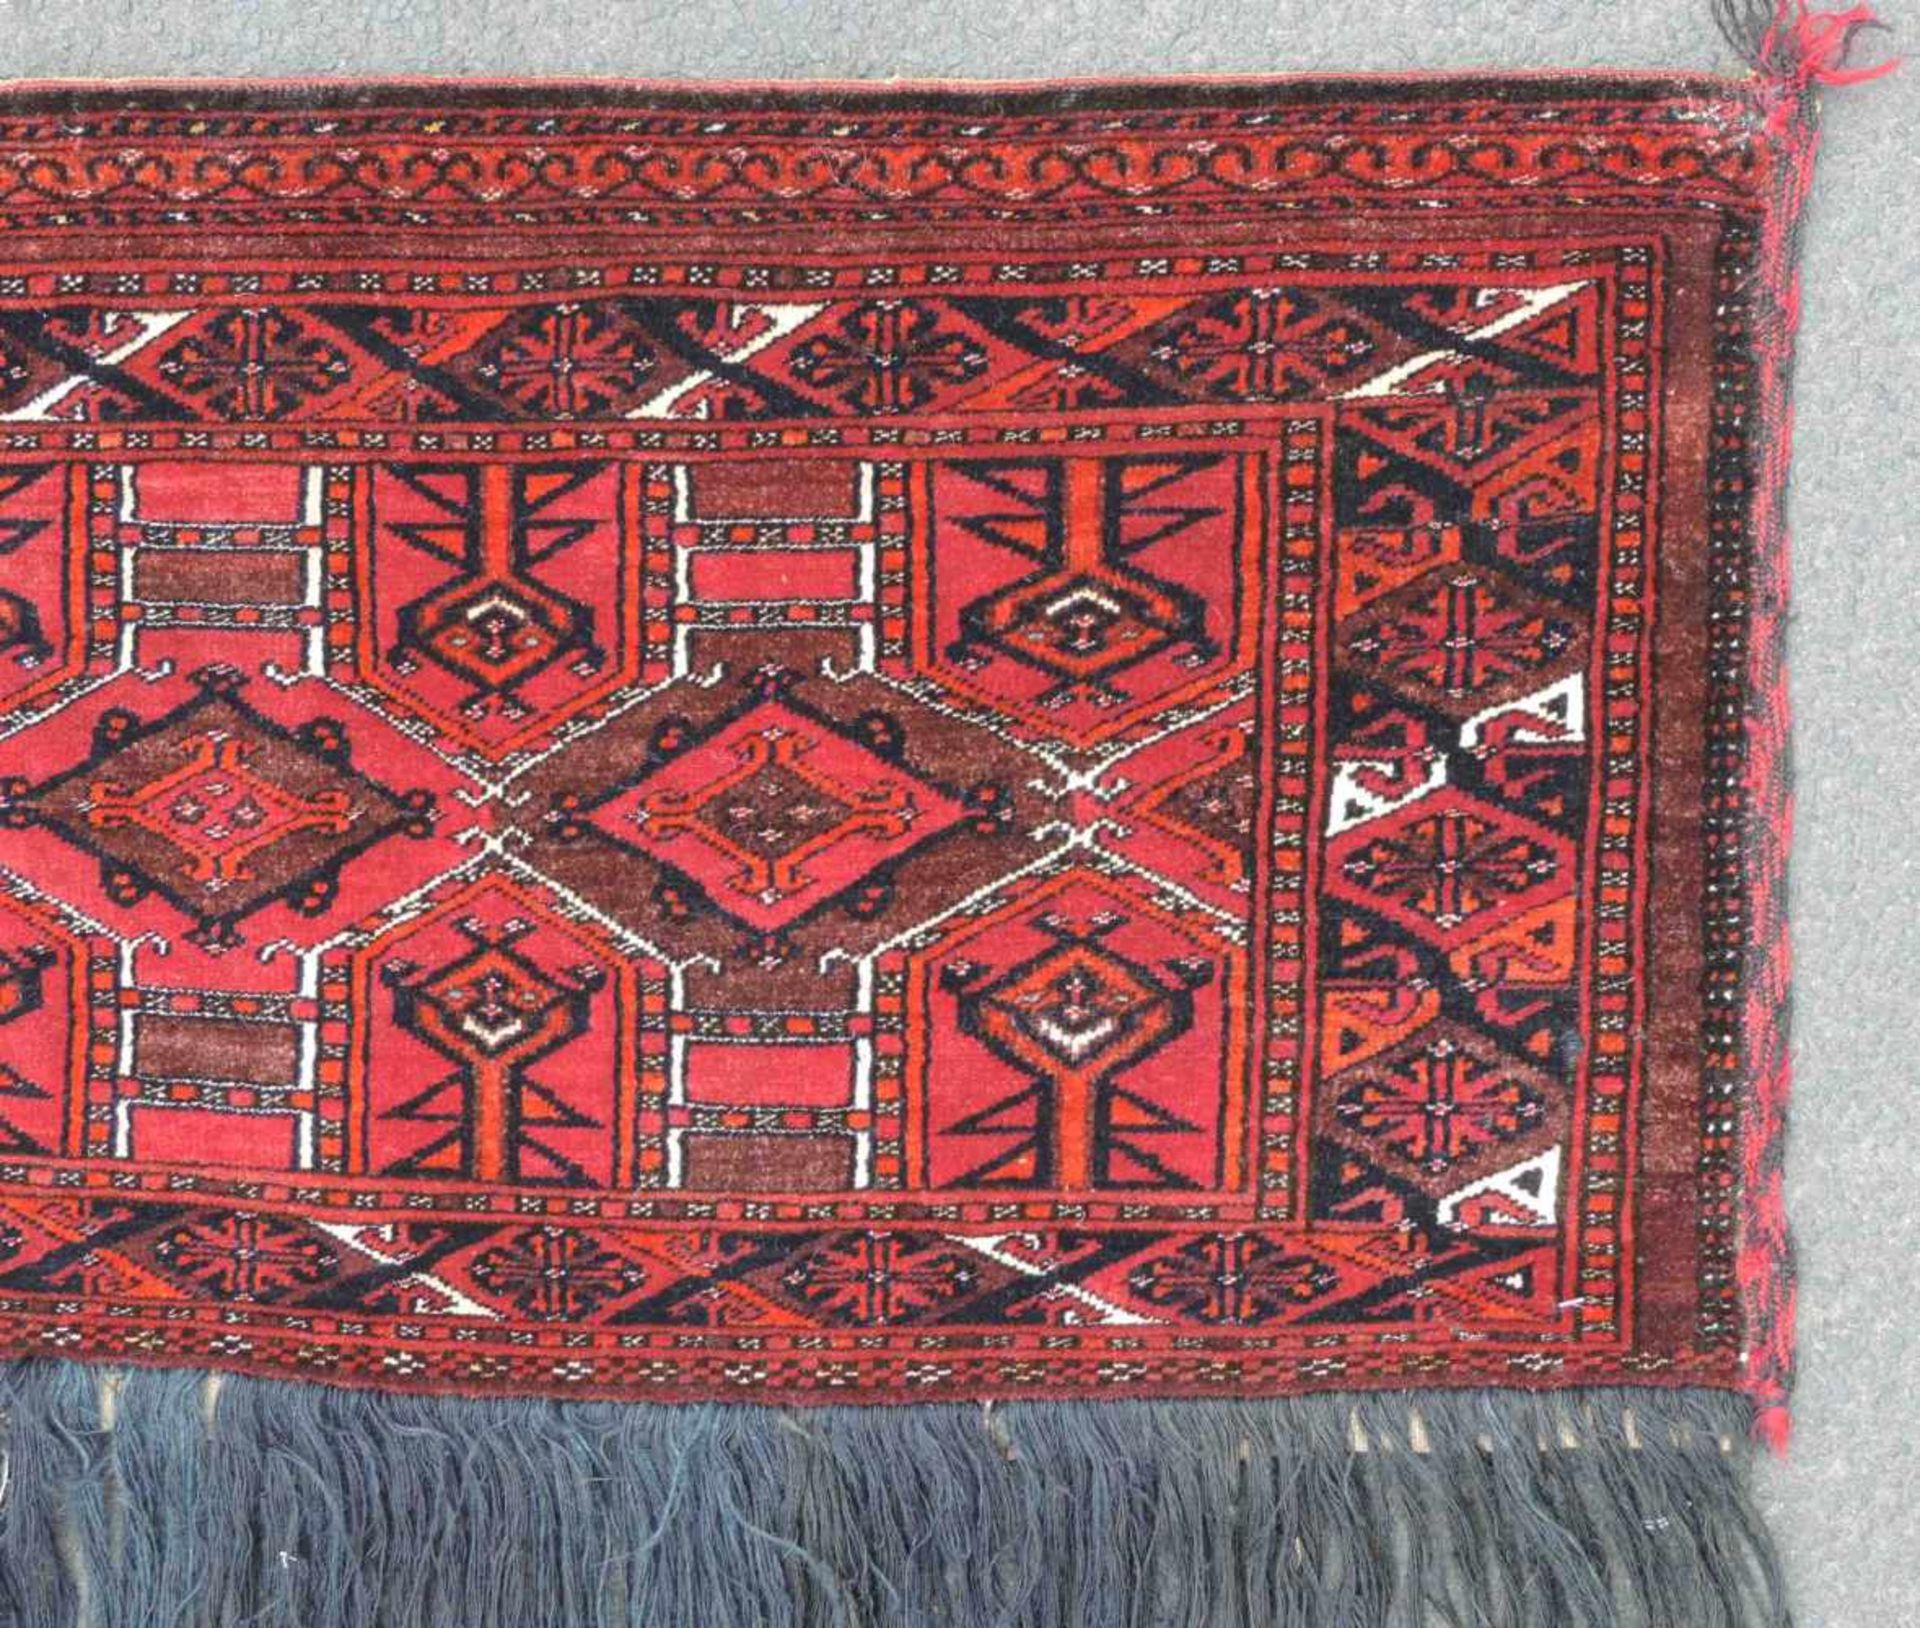 Saryk "Behang" Stammesteppich. Turkmenistan. Antik, um 1880. 47 cm x 132 cm ohne Fransen gemessen. - Image 2 of 3